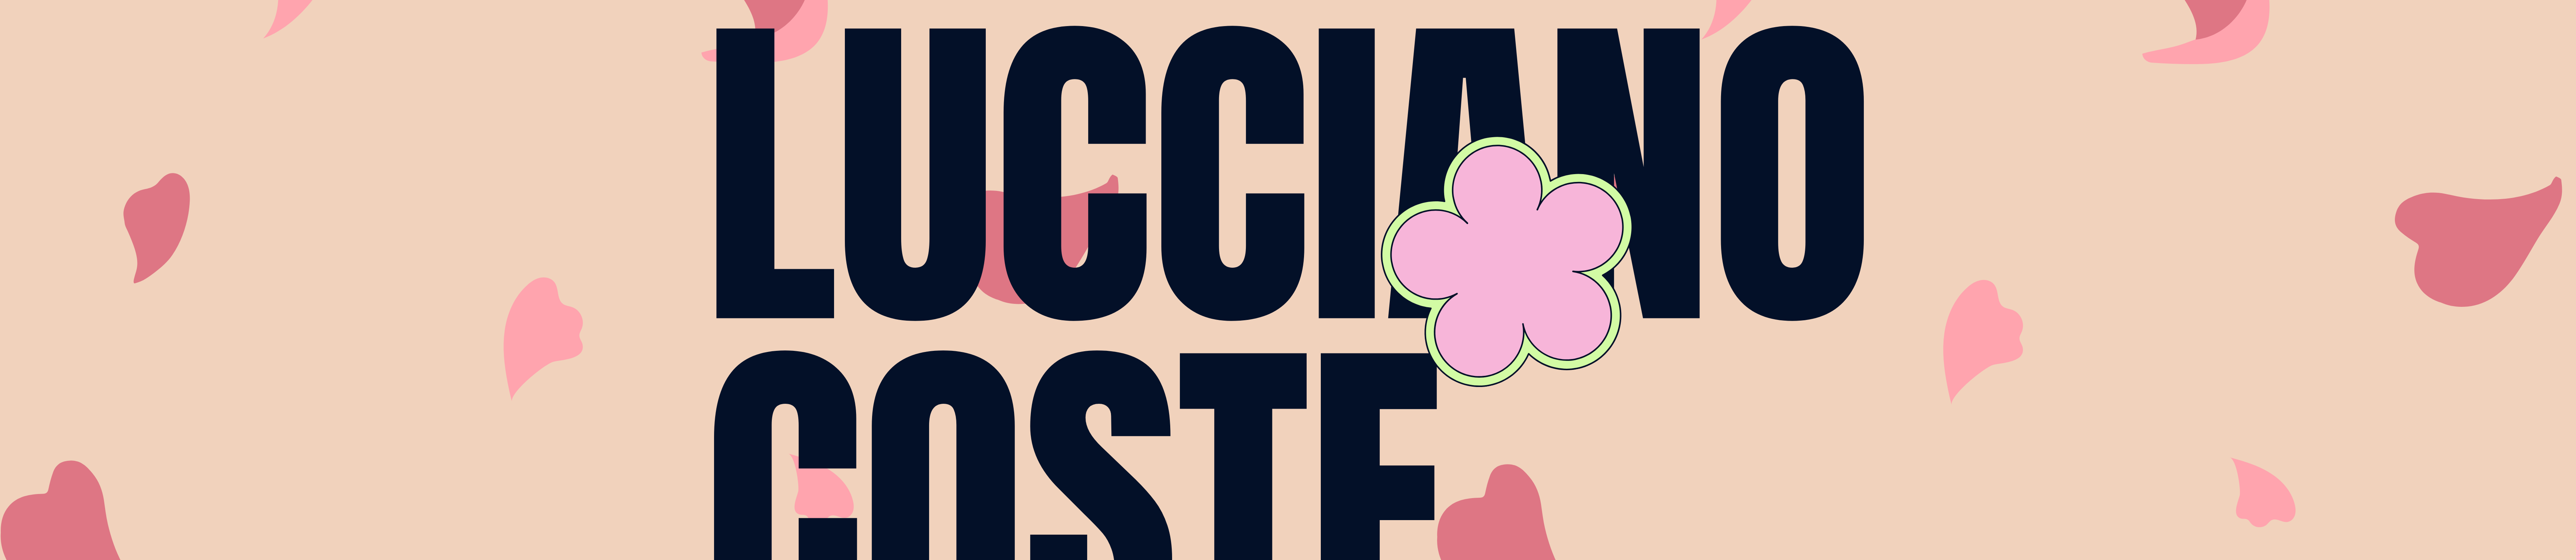 Lucciano Coste's profile banner